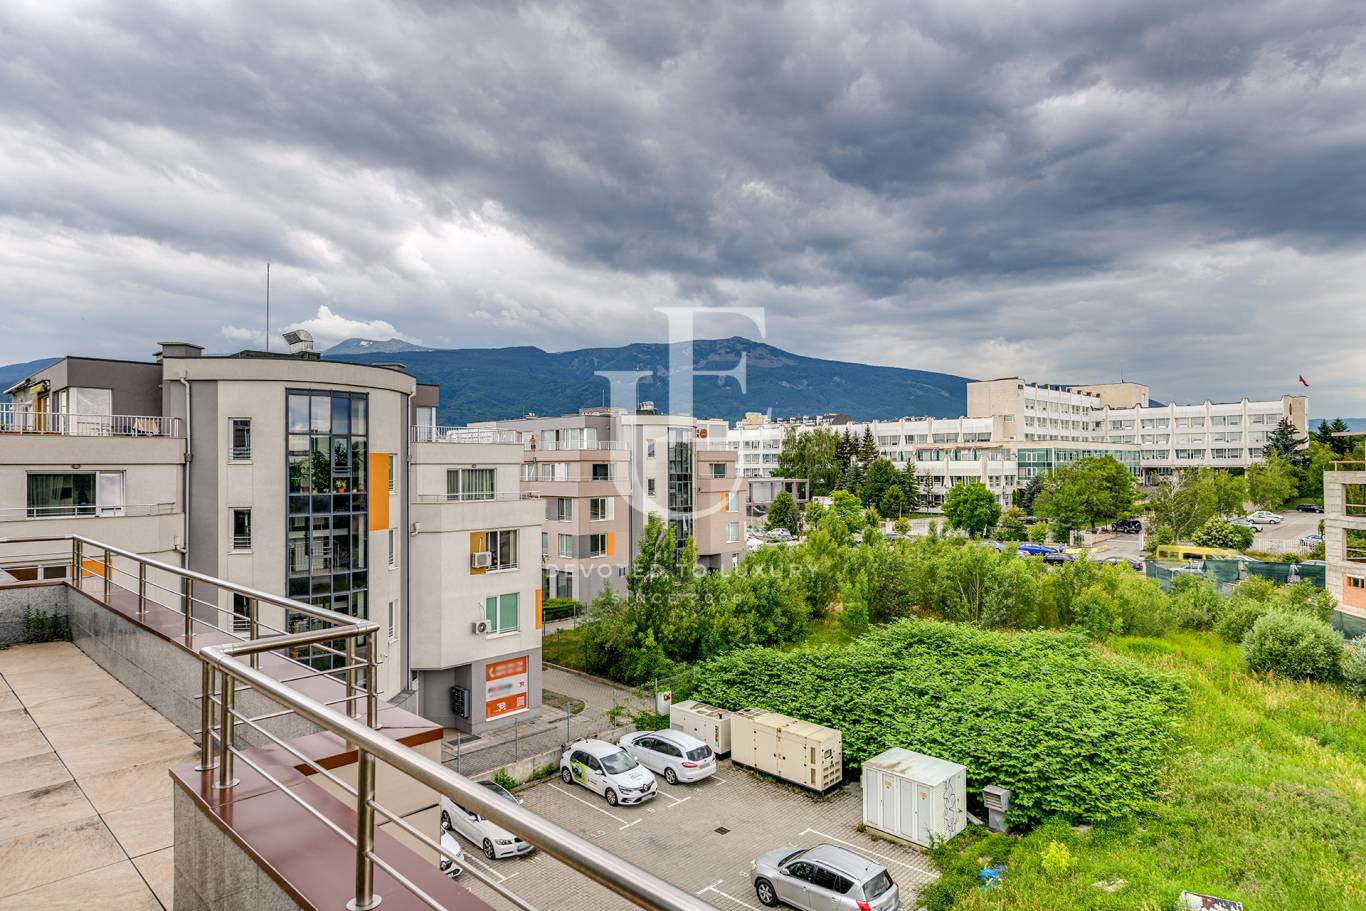 Офис под наем в София, Студентски град - код на имота: N17624 - image 5